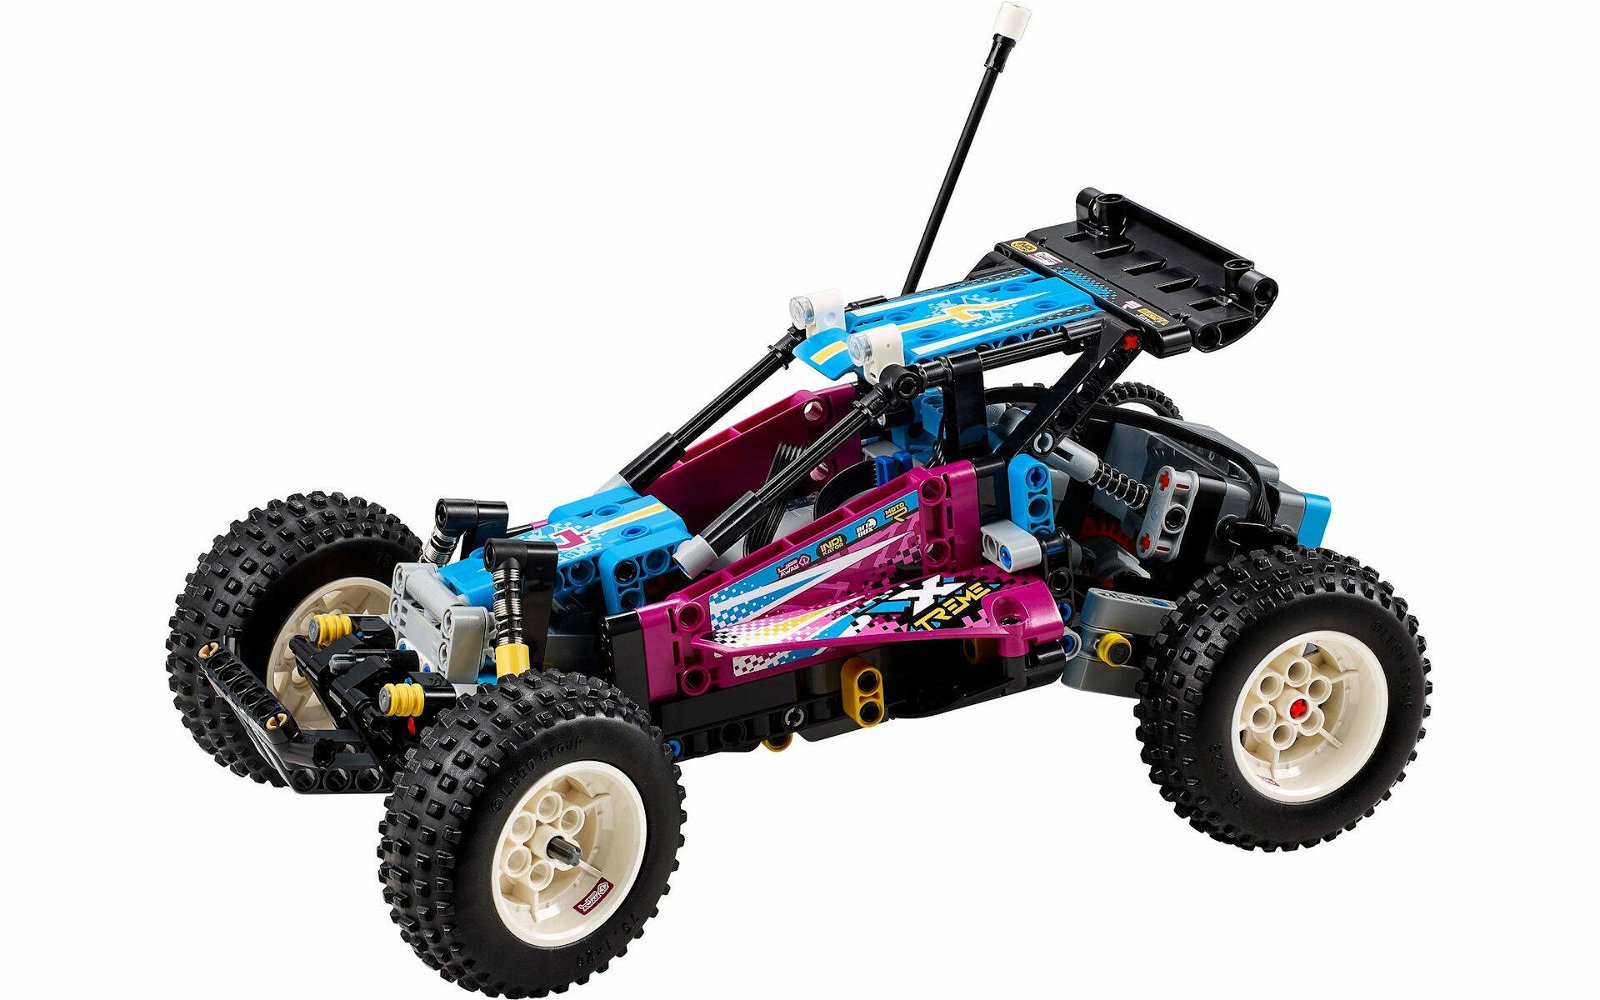 Immagine di LEGO MANIA. Costruiamo insieme il set #42124 Buggy fuoristrada